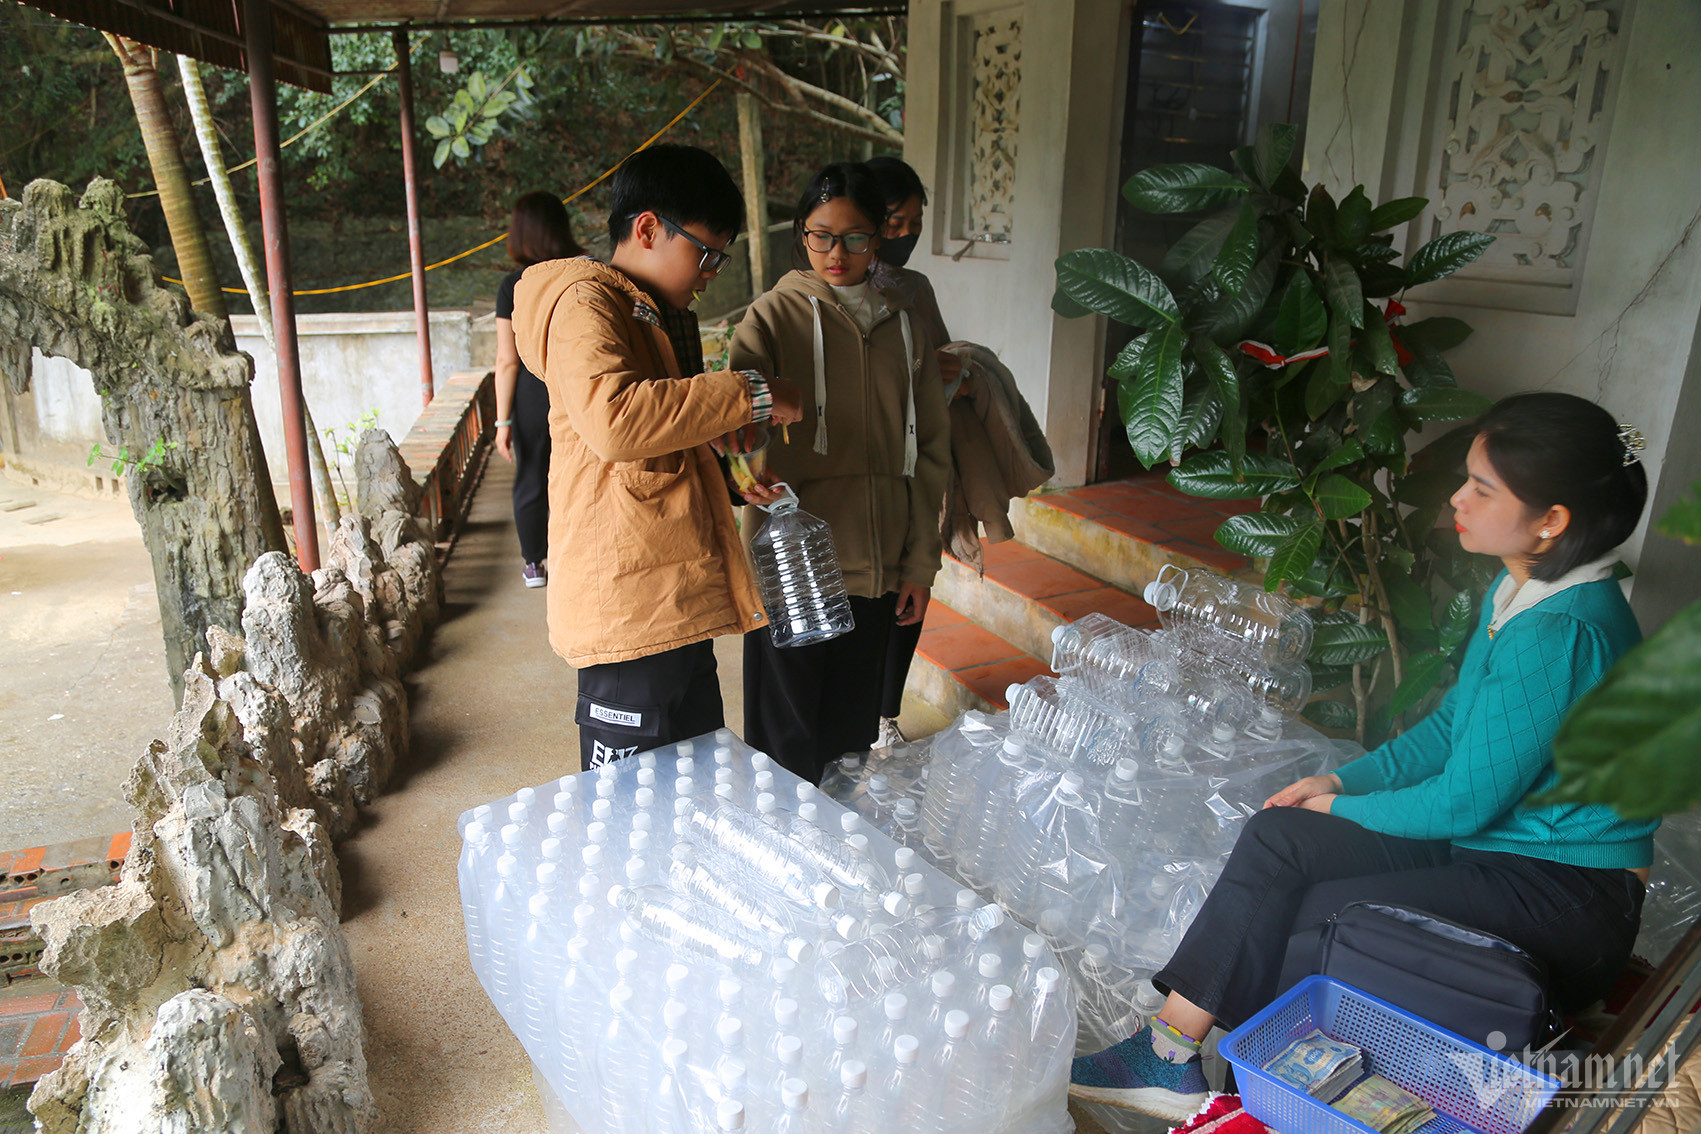 Dịch vụ bán chai nhựa và can để đựng nước rất đông khách, mỗi chai nhỏ có giá từ 10 nghìn đồng, chai 5 lít giá 15 nghìn đồng.